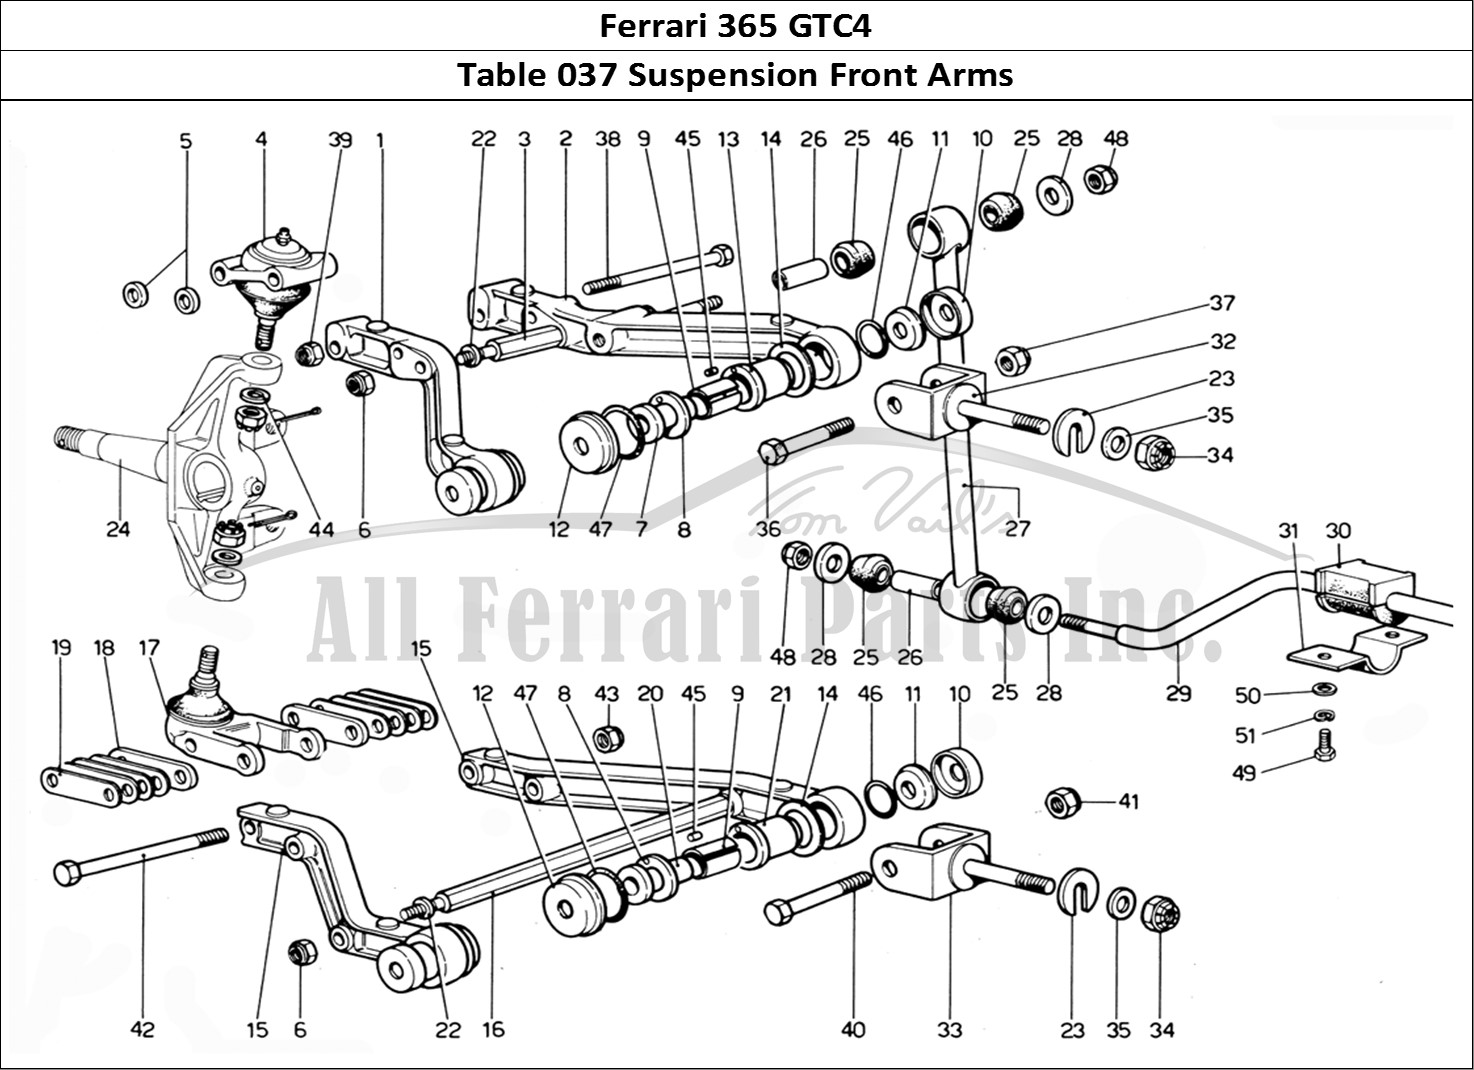 Ferrari Parts Ferrari 365 GTC4 (Mechanical) Page 037 Front suspension arms